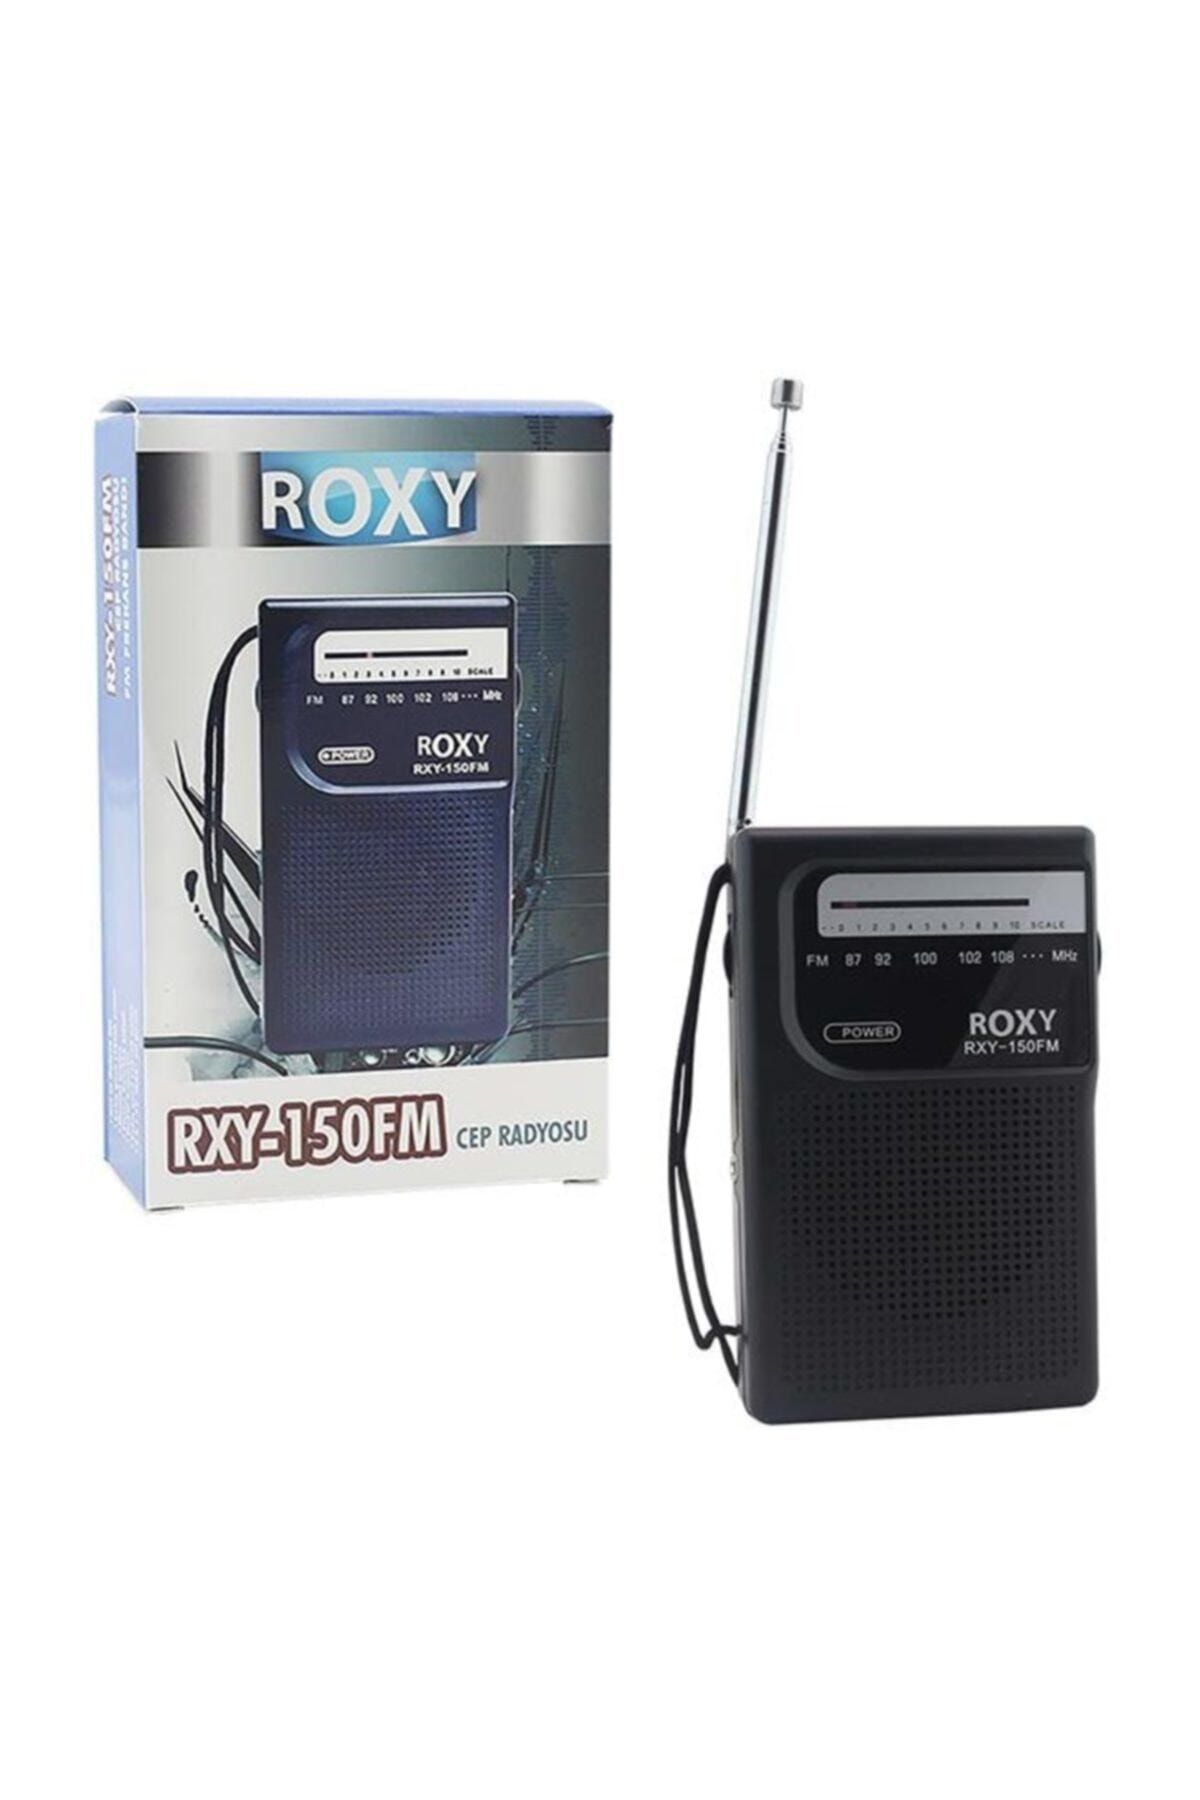 Roxy Rxy-150fm Radyo